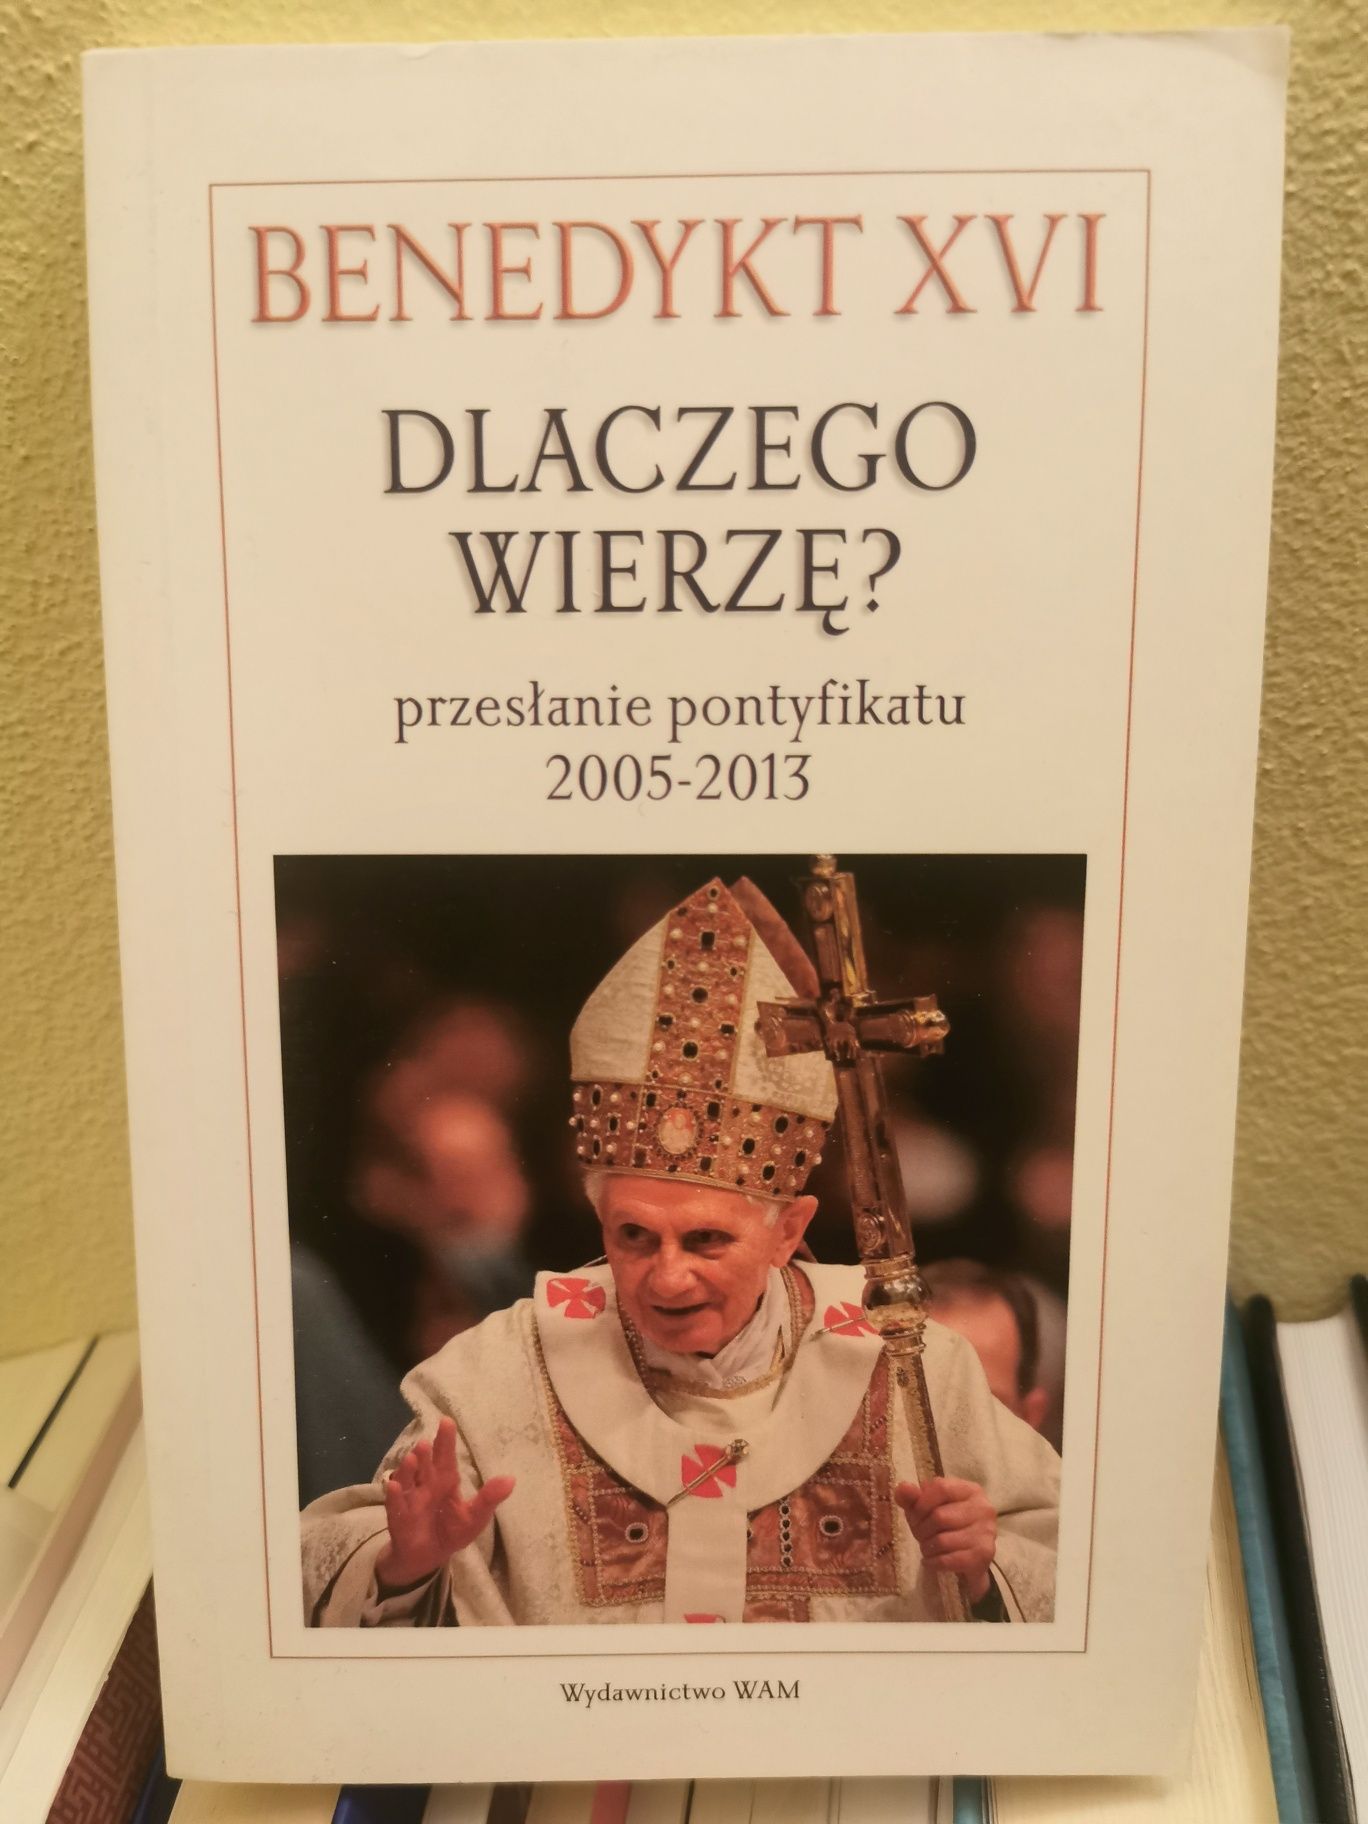 Benedykt XVI Dlaczego wierzę przesłanie pontyfikatu 2005-